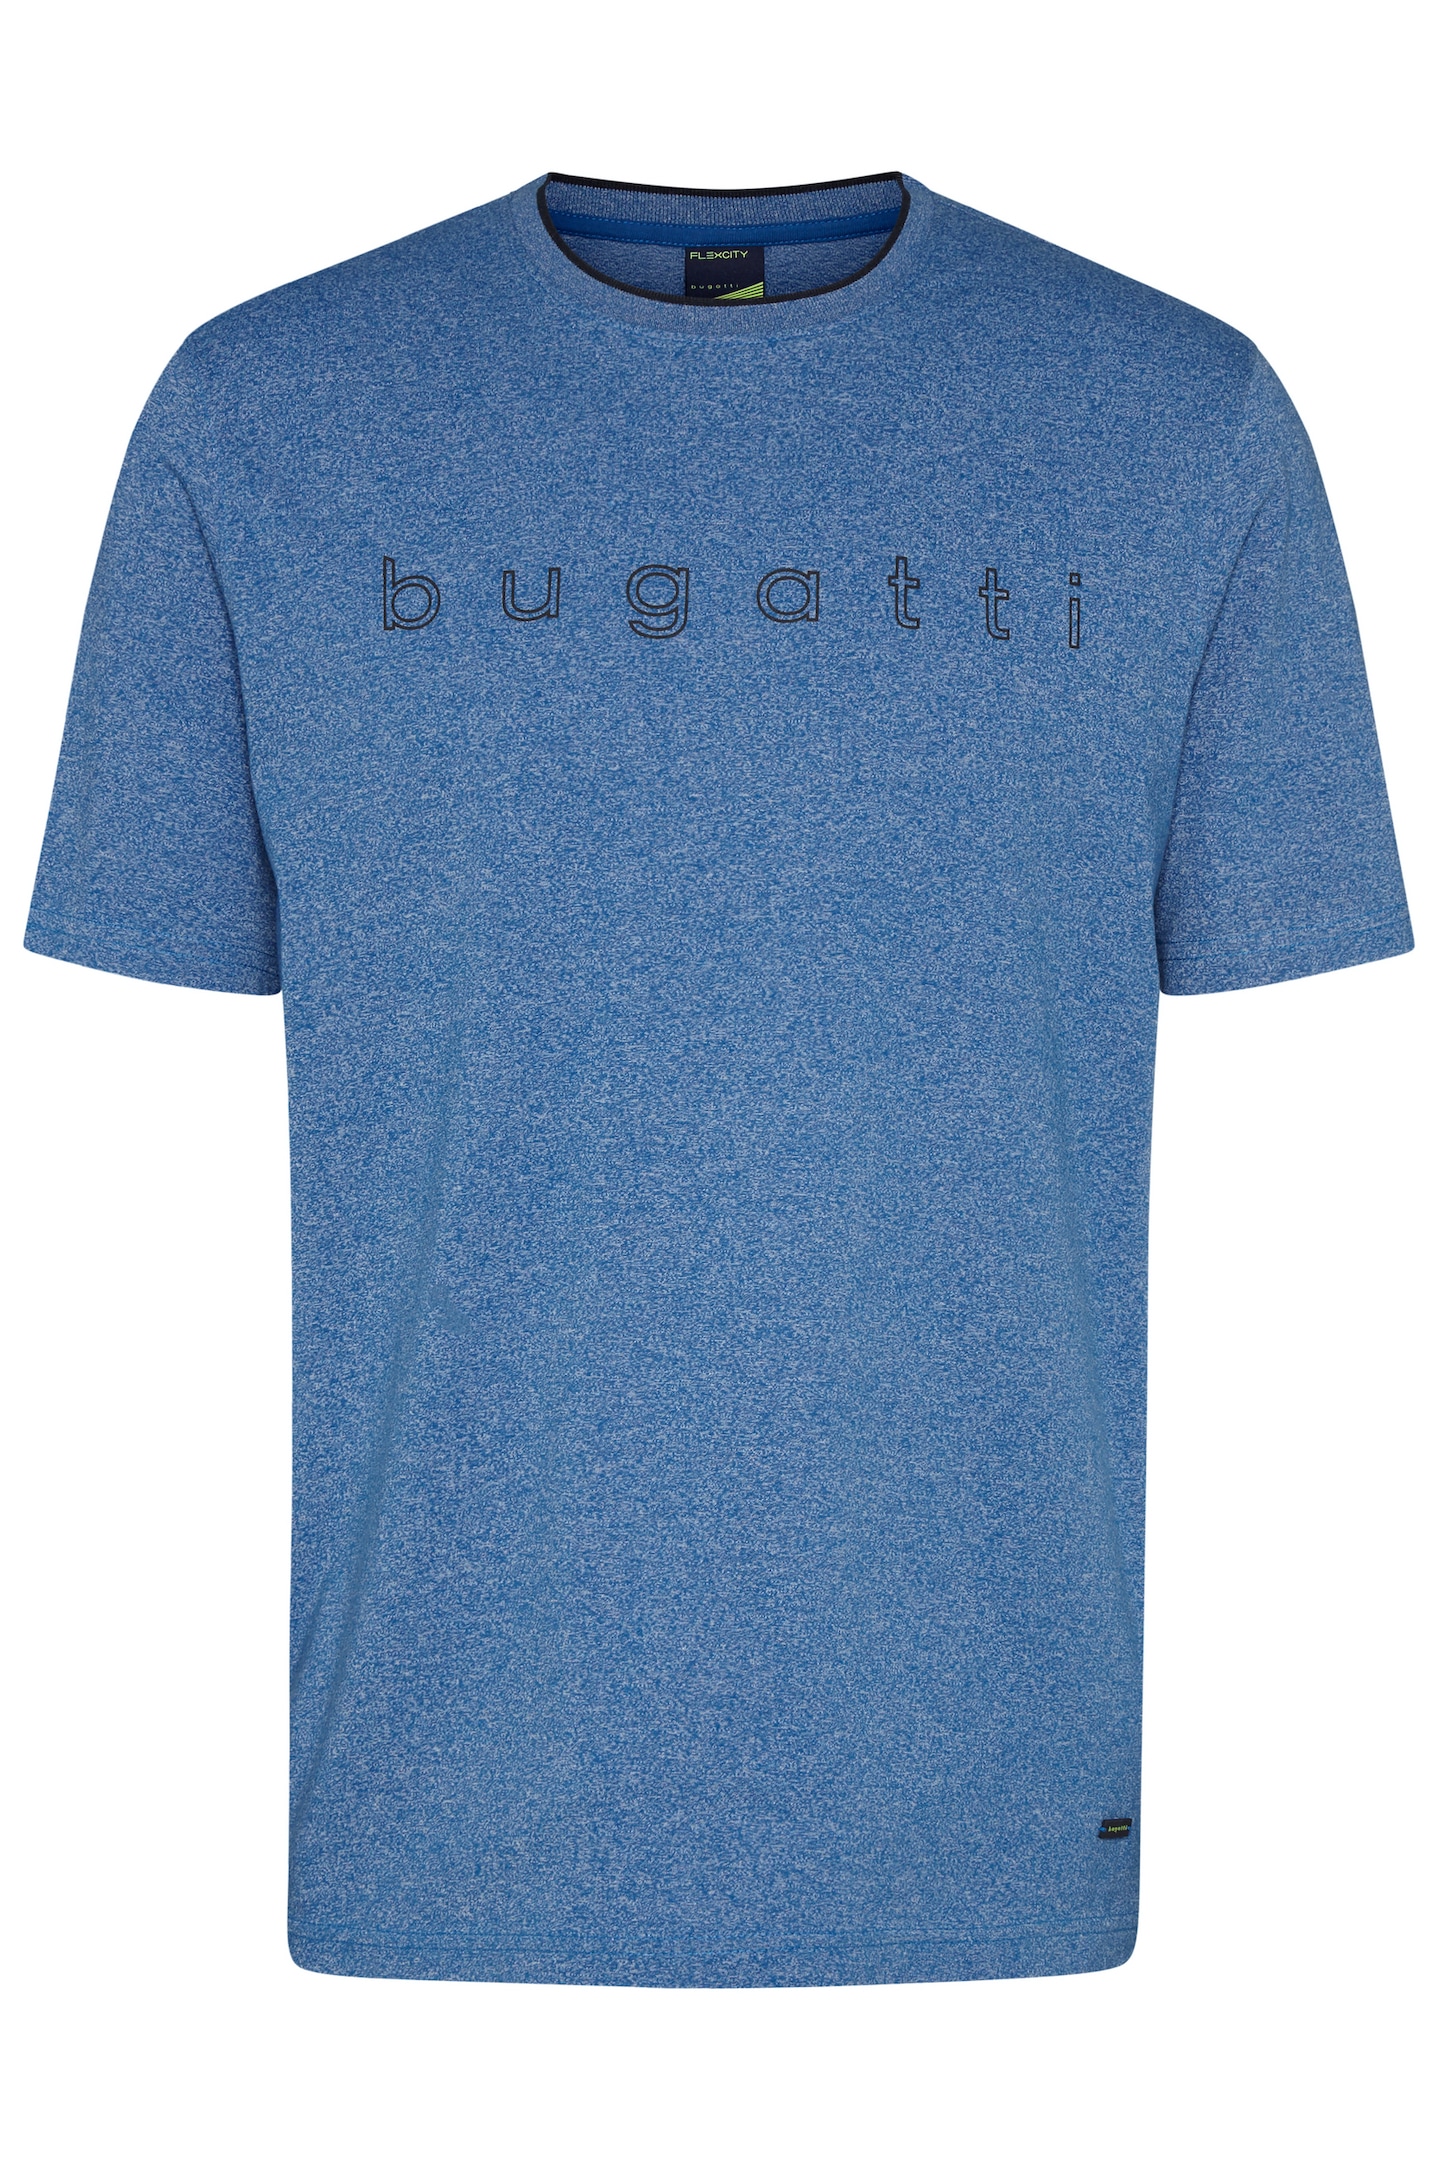 bugatti T-Shirt, online großem mit kaufen bugatti Logo-Print